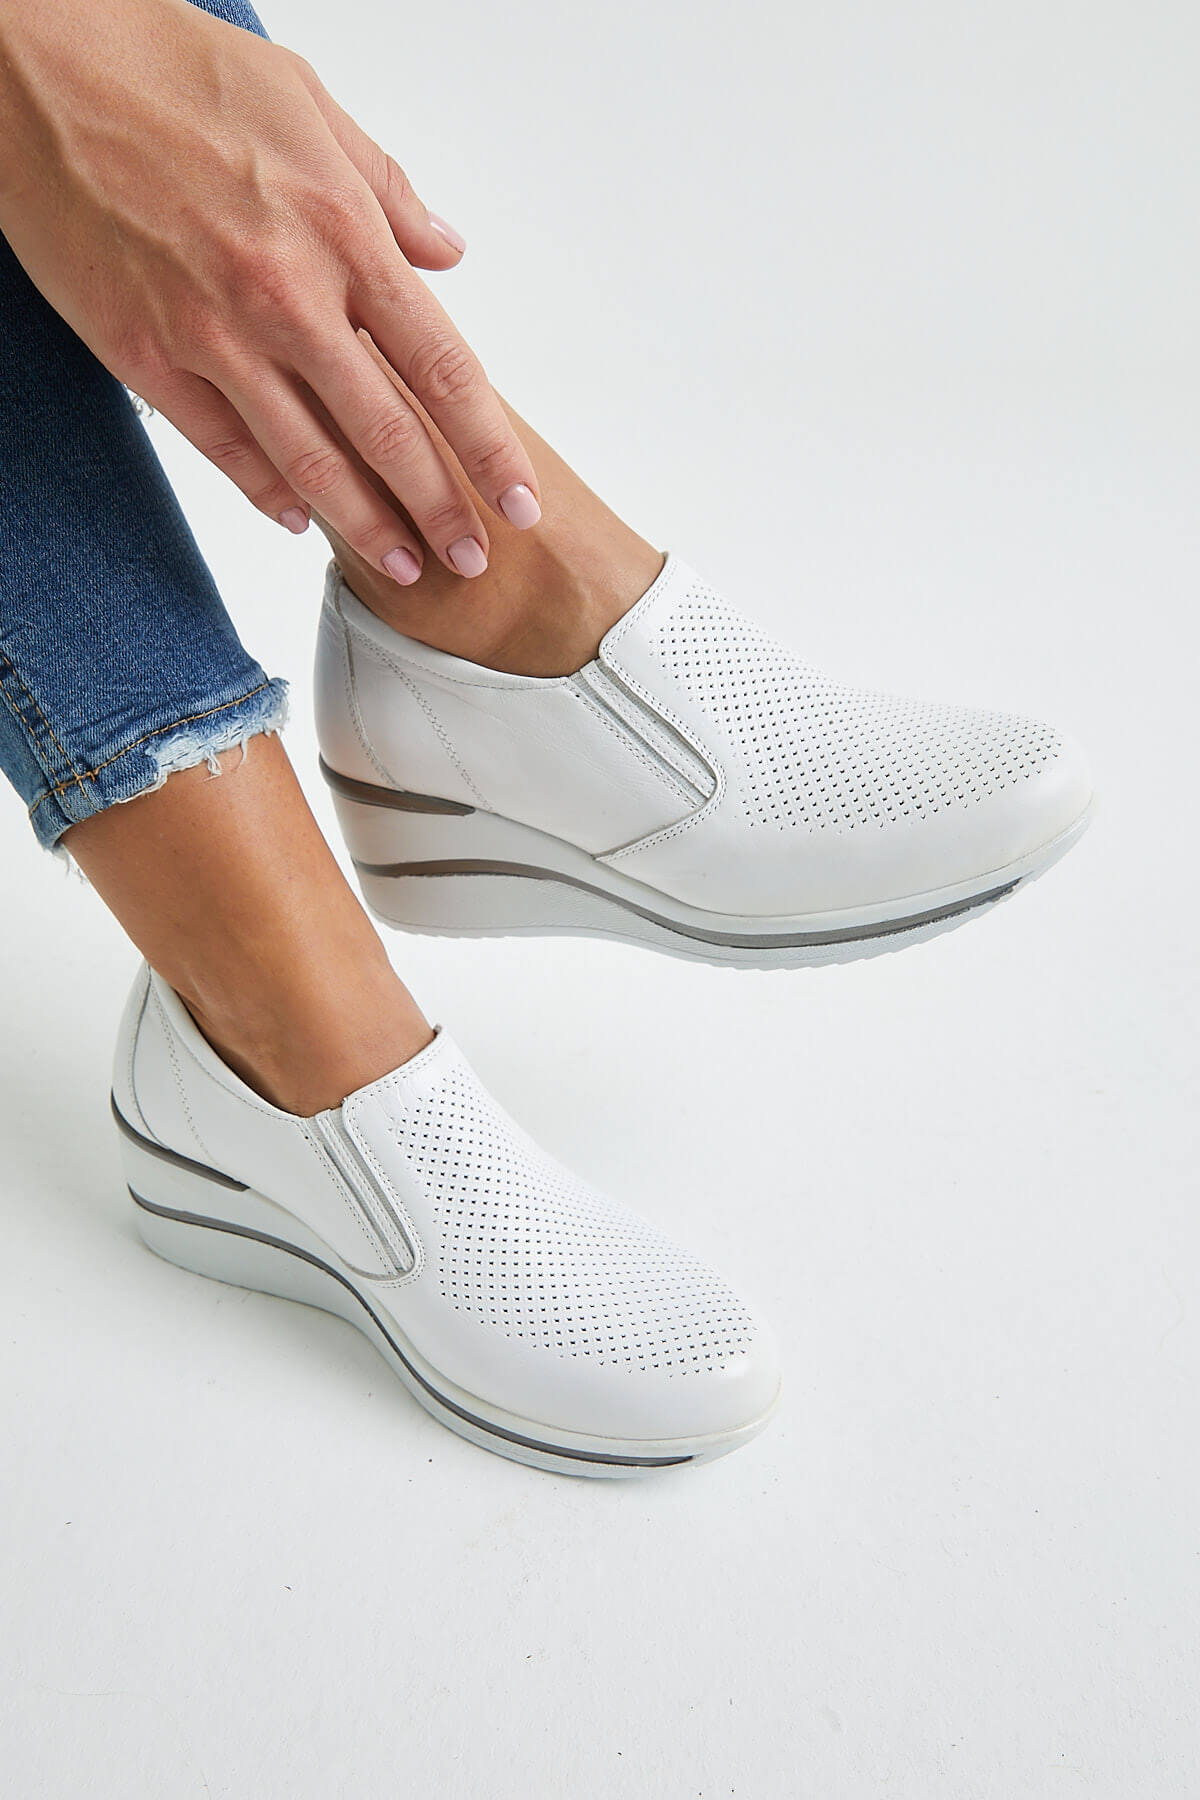 Ray To position Reception Kadın Dolgu Topuk Deri Sneakers Beyaz 2111501Y | Venüs Ayakkabı